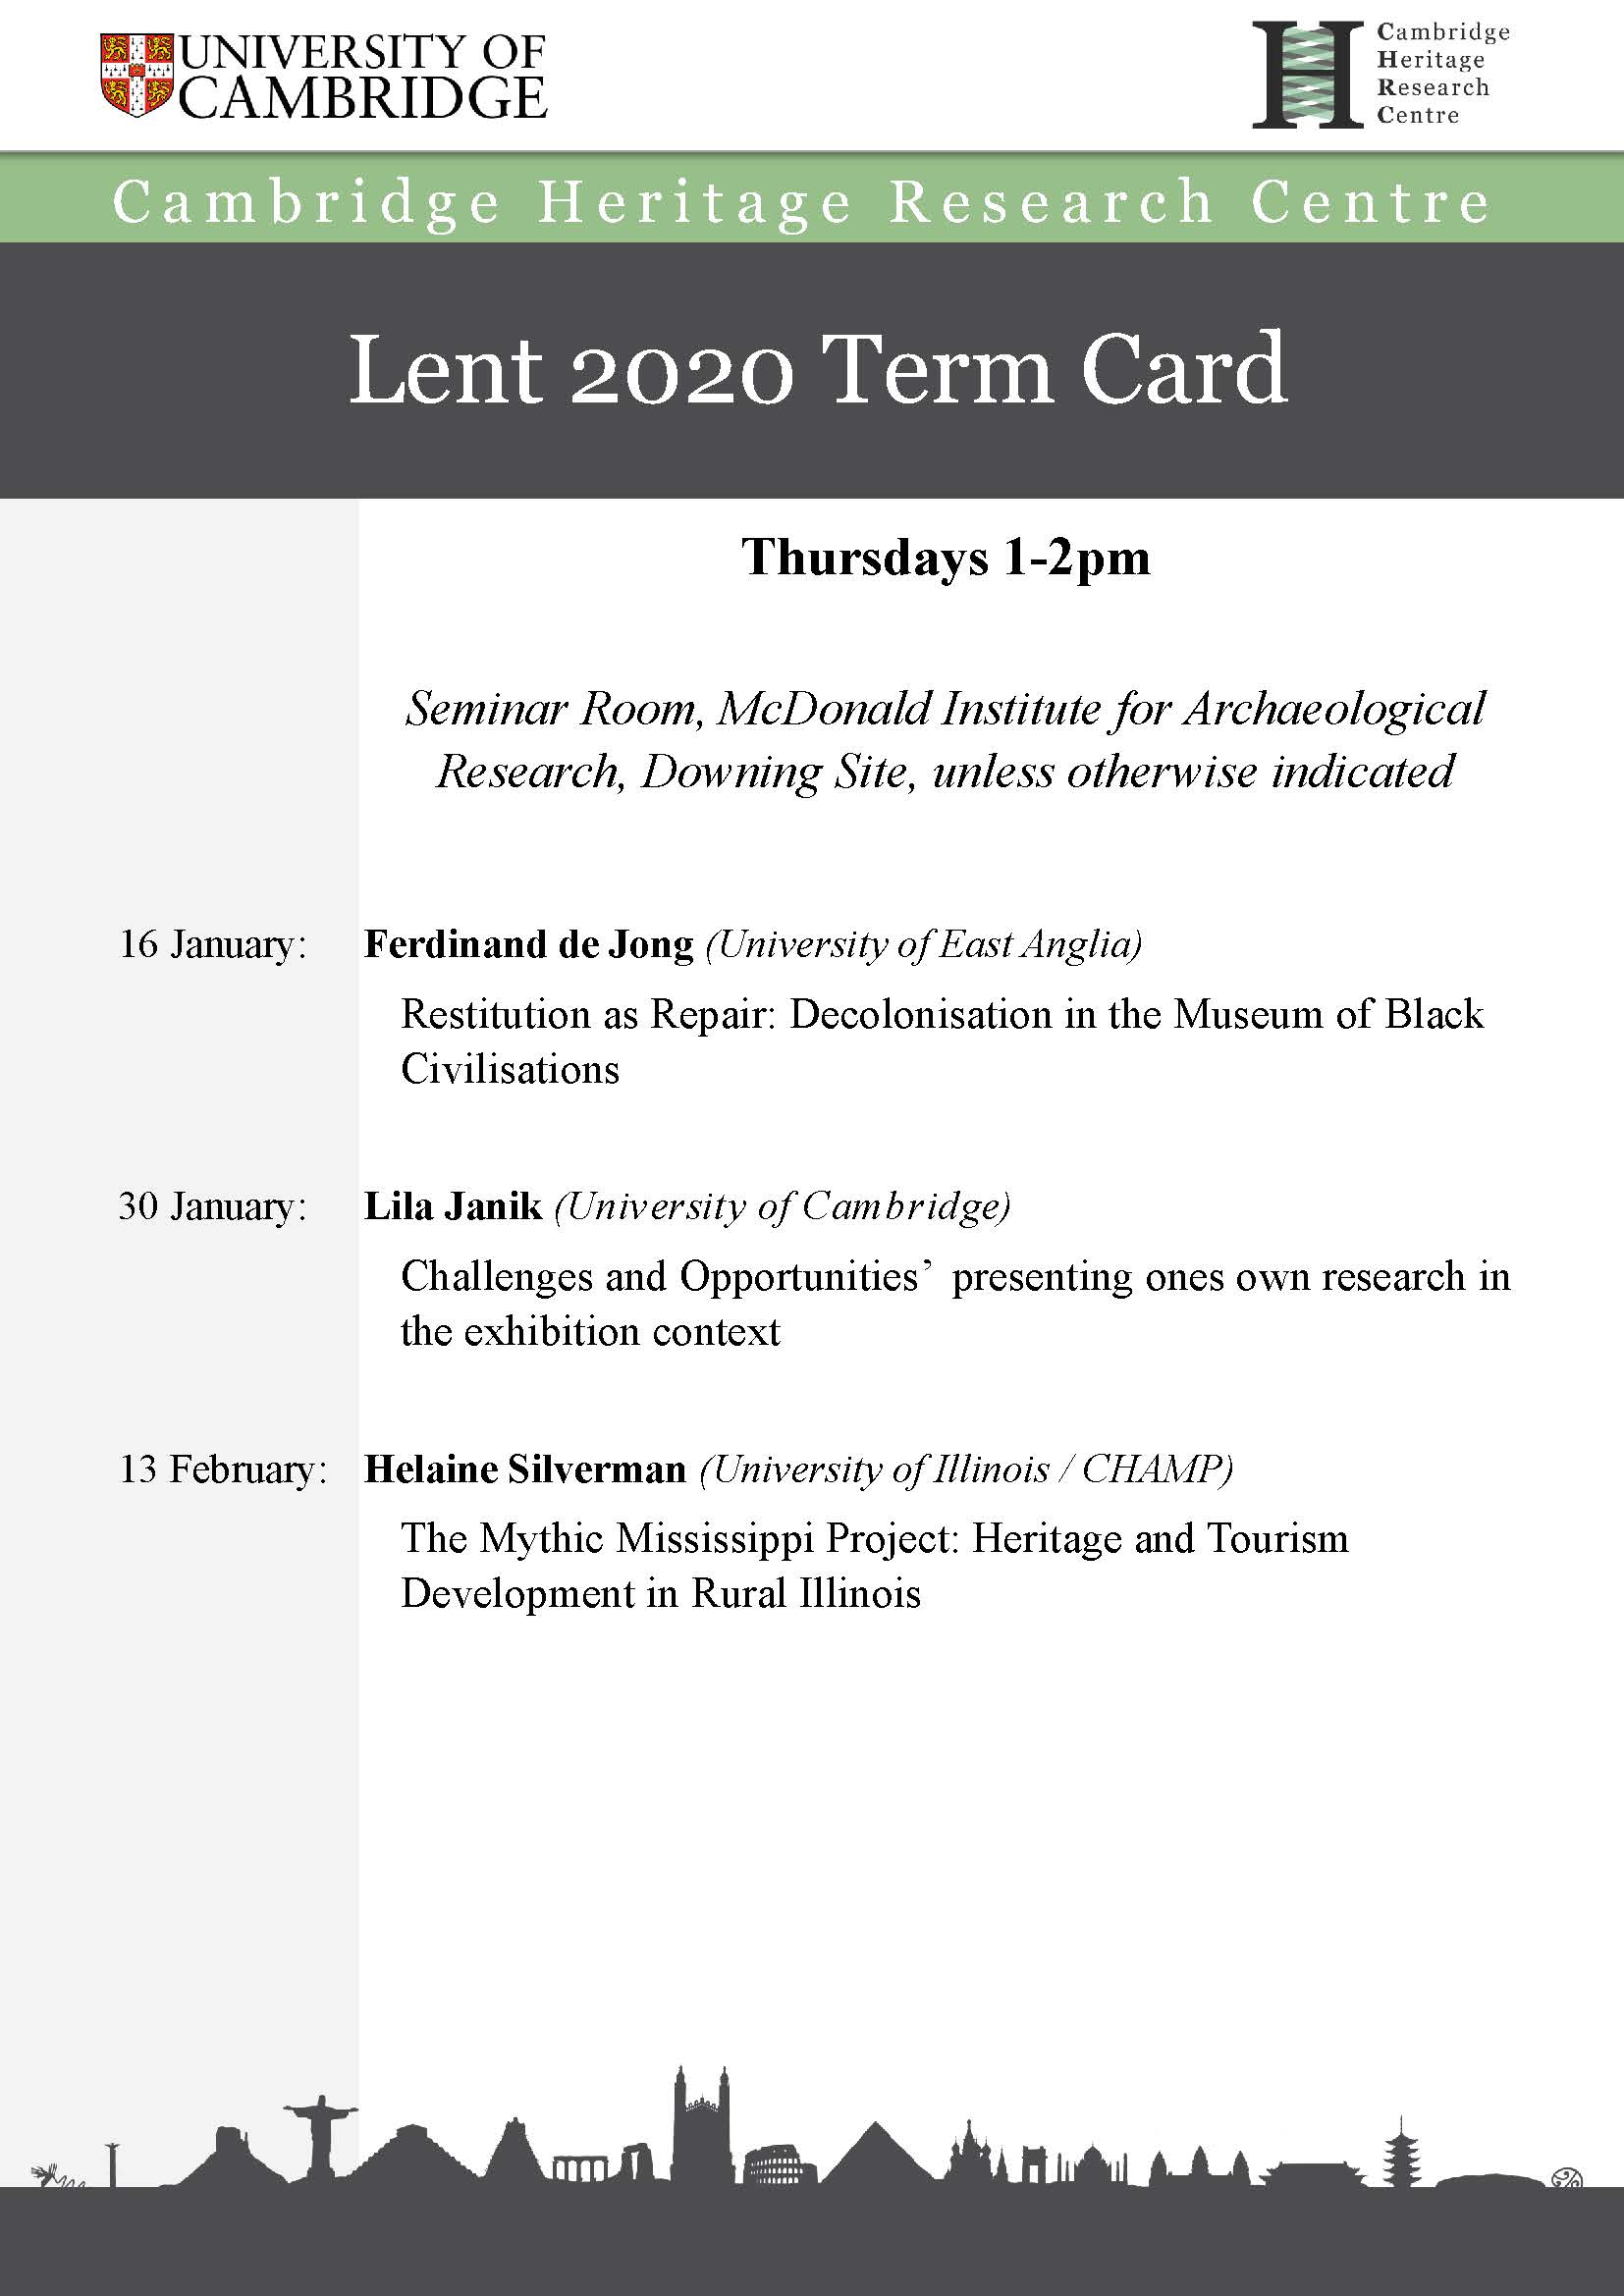 Lent Term Card 2020